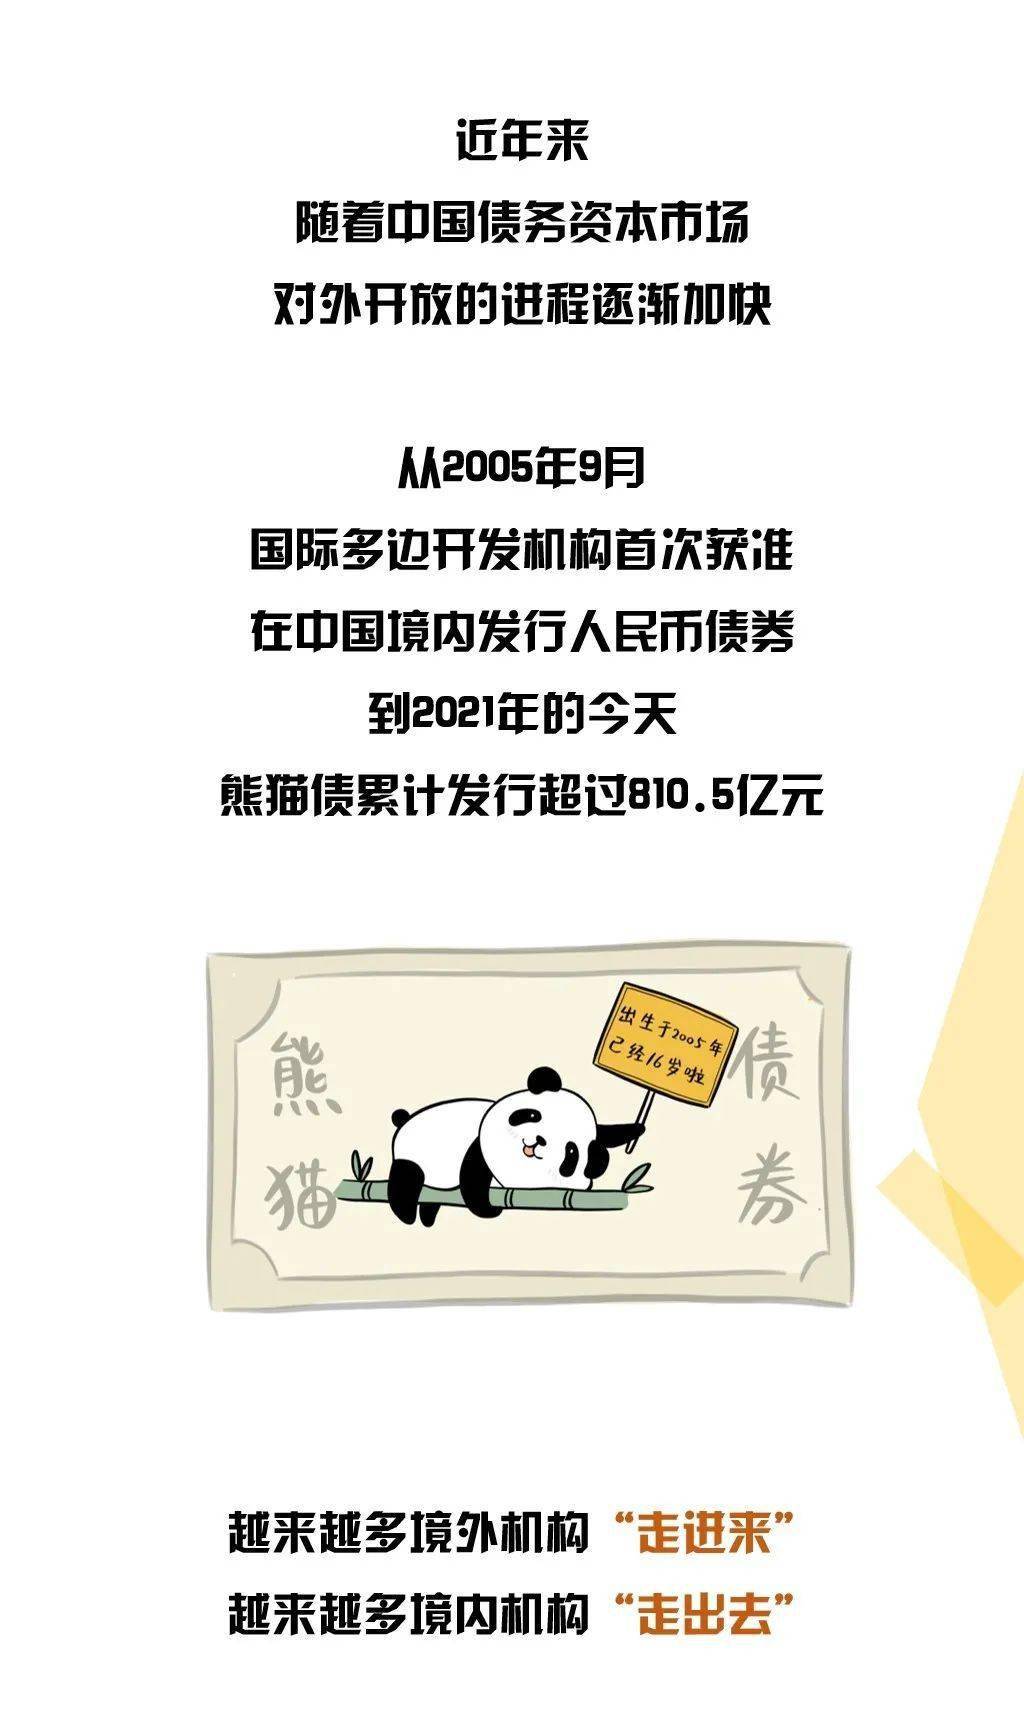 熊猫债是卖熊猫的吗?